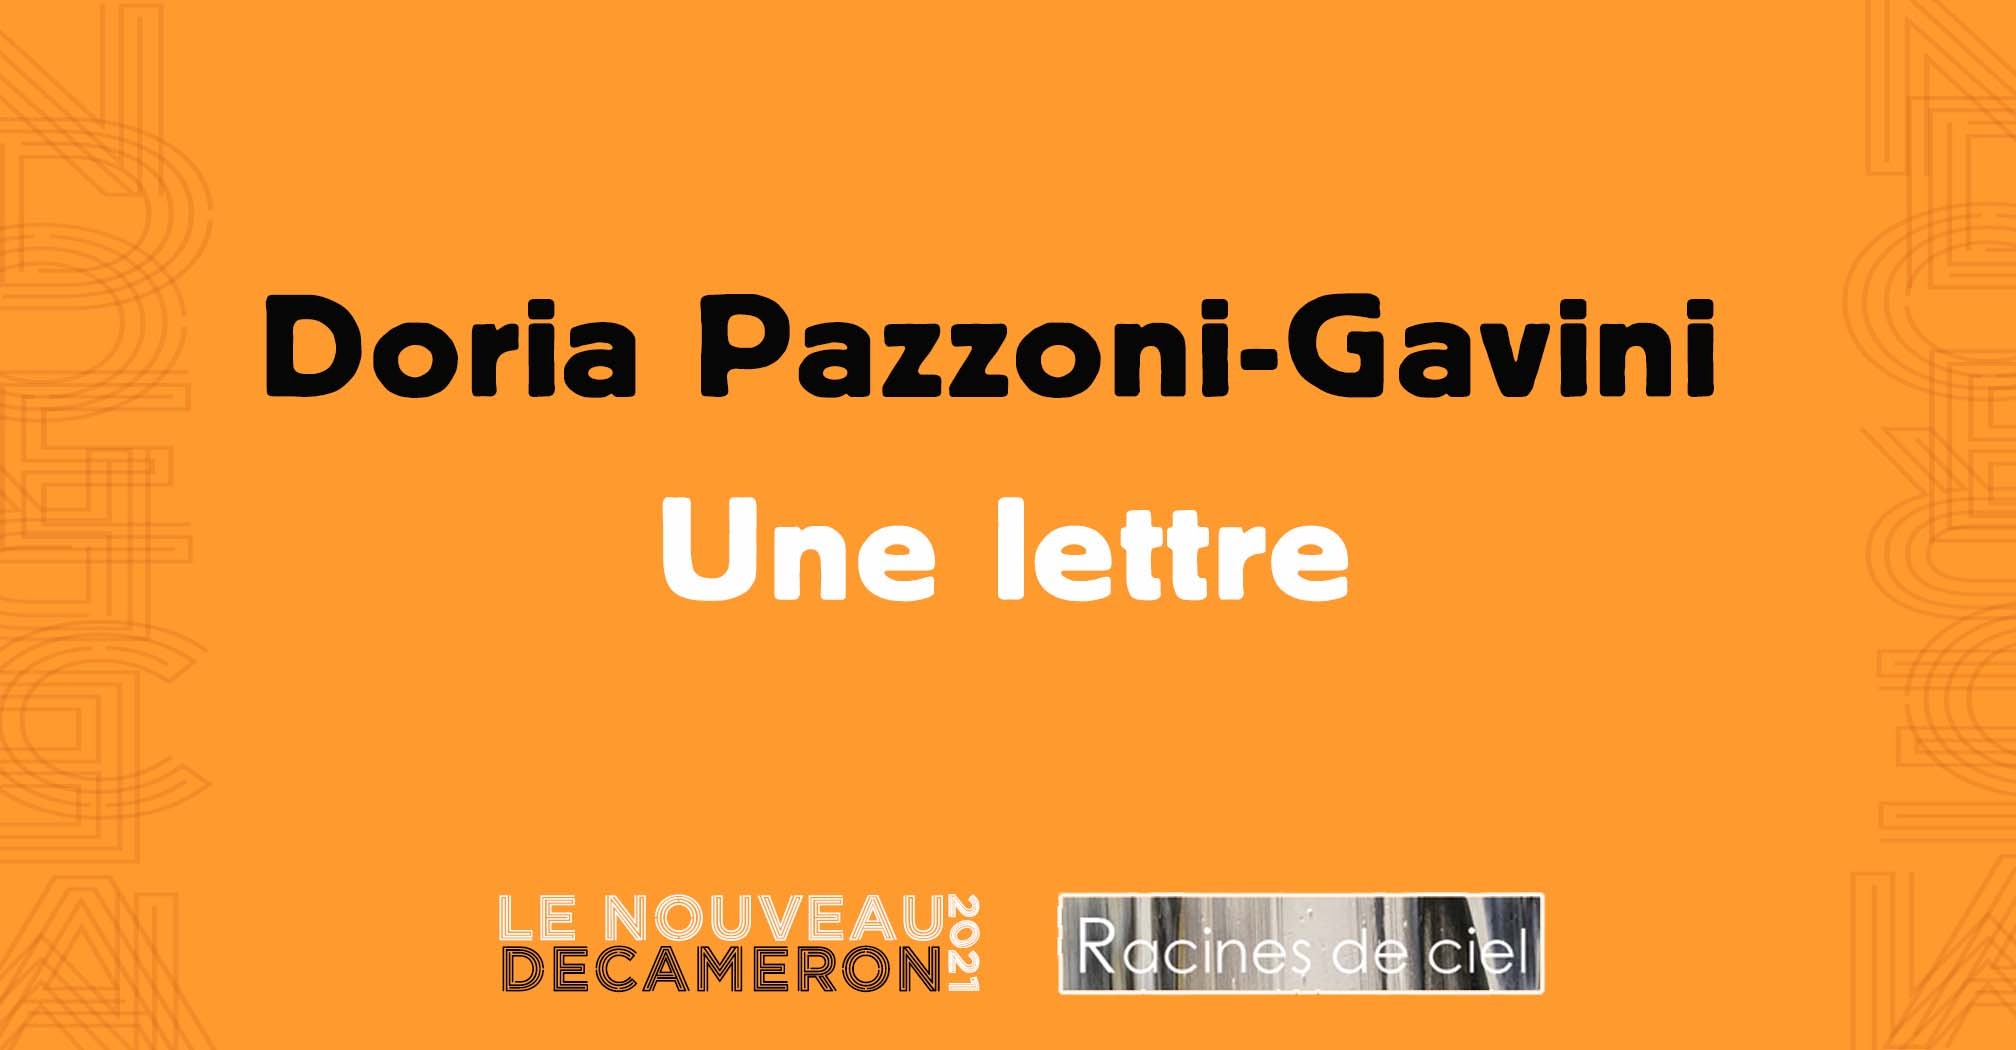 Doria Pazzoni-Gavini - Une lettre